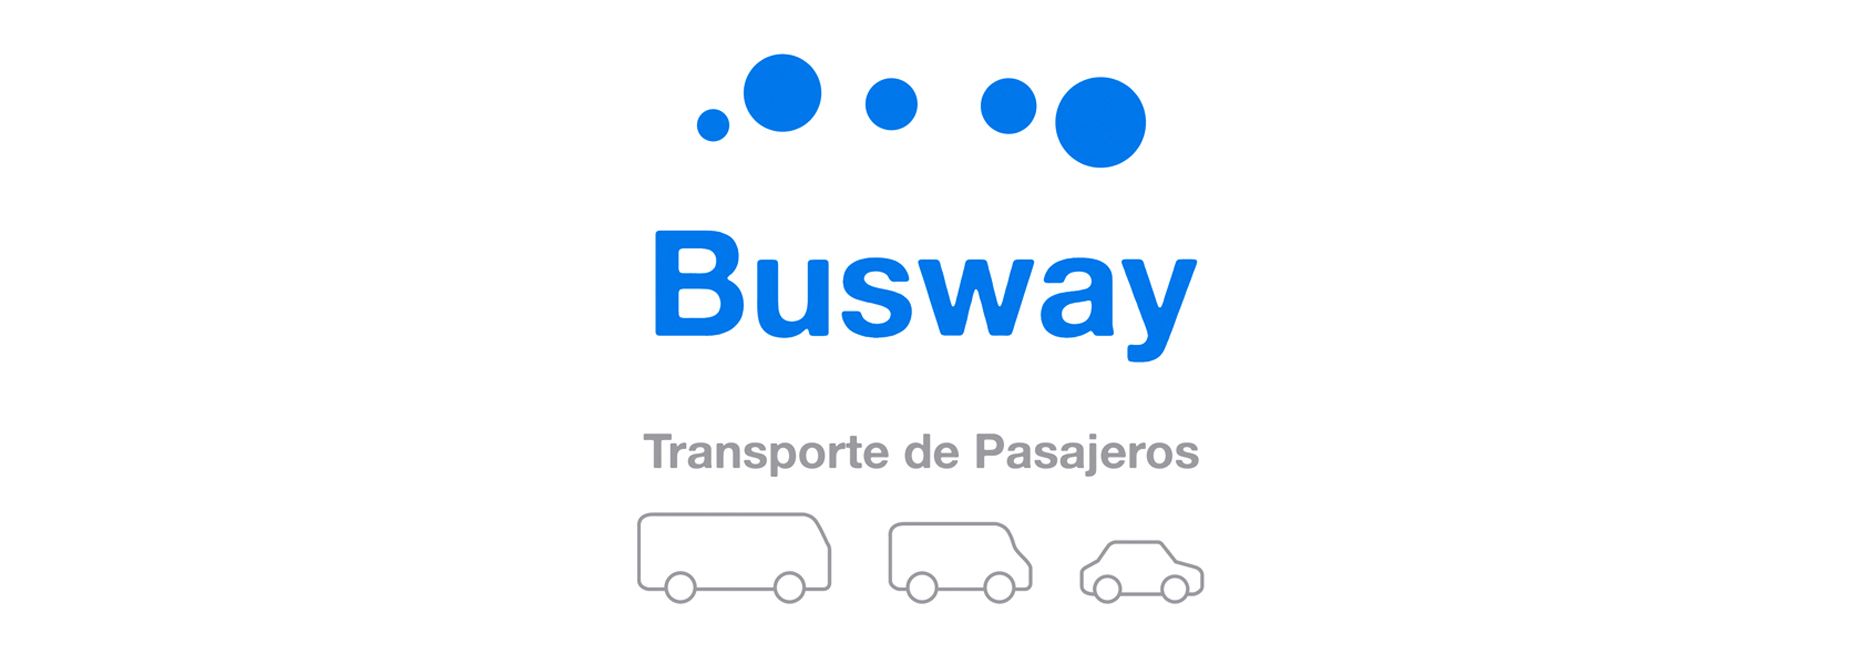 busway-lp.jpg